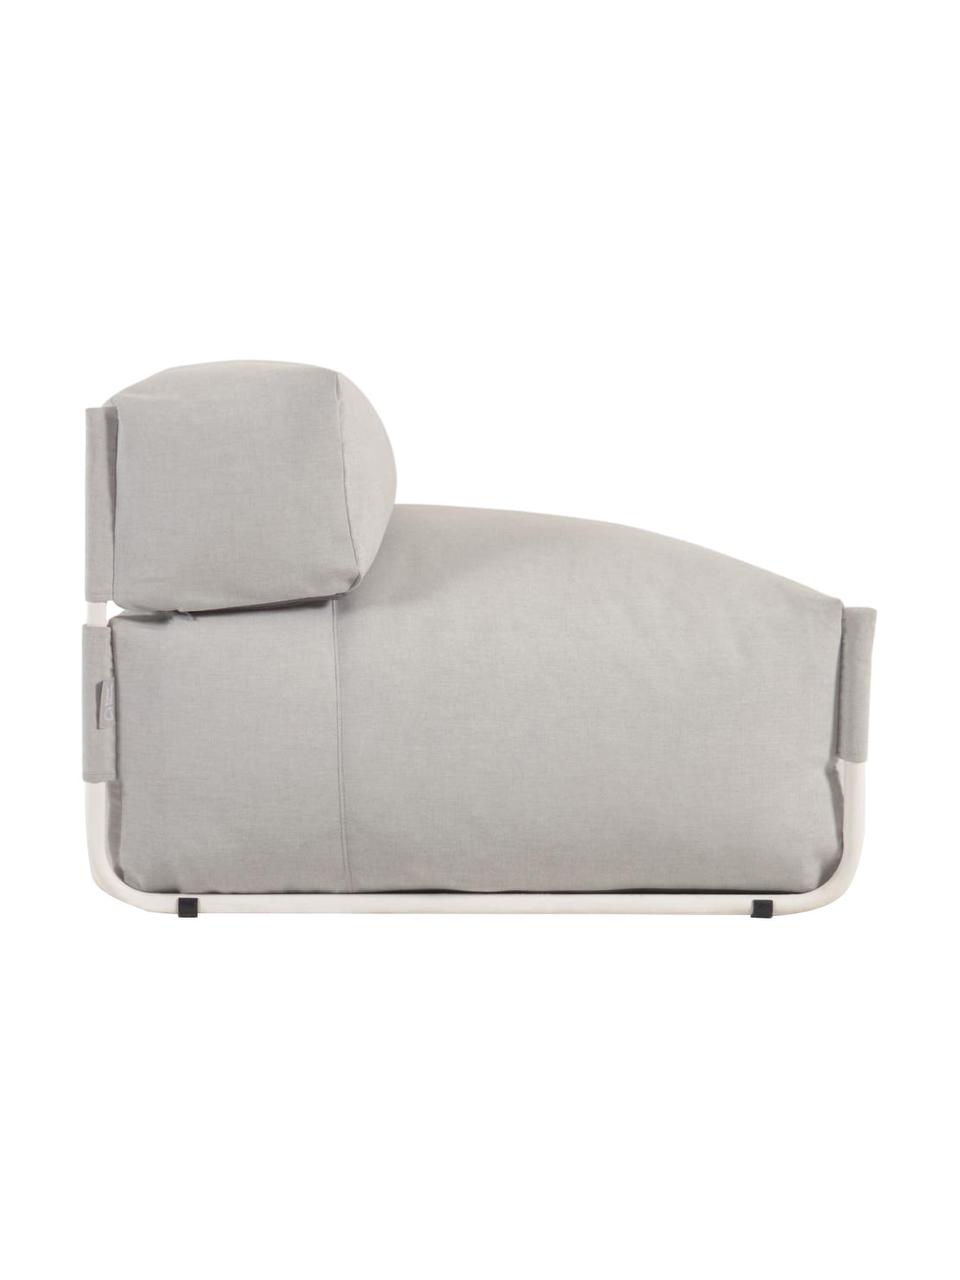 Zewnętrzny fotel wypoczynkowy Square, Tapicerka: poliester, polipropylen, , Stelaż: aluminium lakierowane, Szary, S 101 x G 101 cm